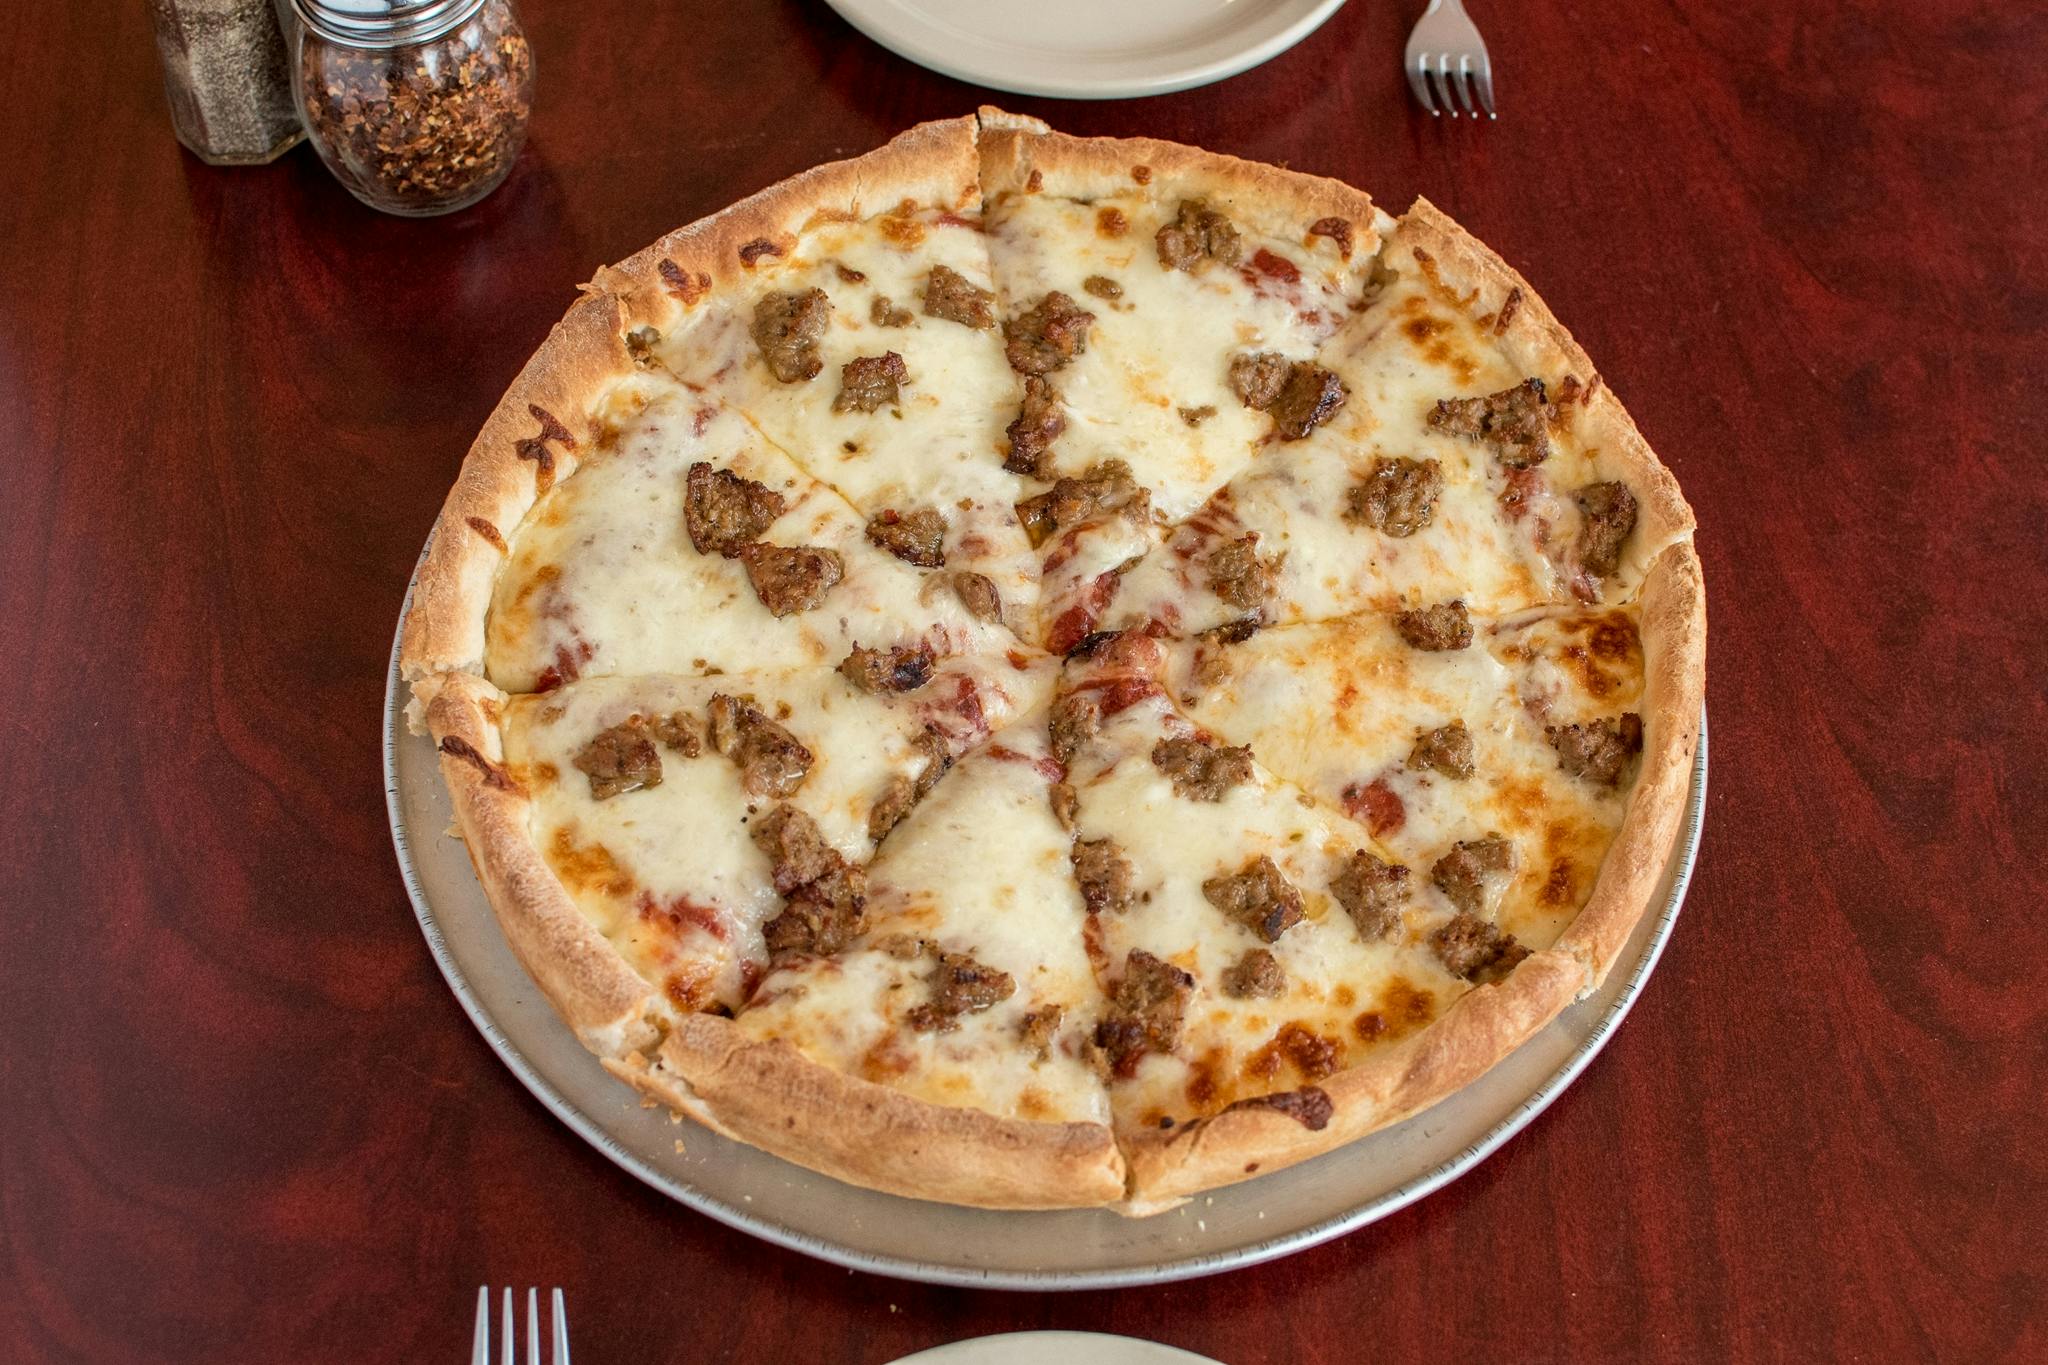 Deep Dish Cheese Pizza from Falbo Bros. Pizzeria - Monona in Monona, WI